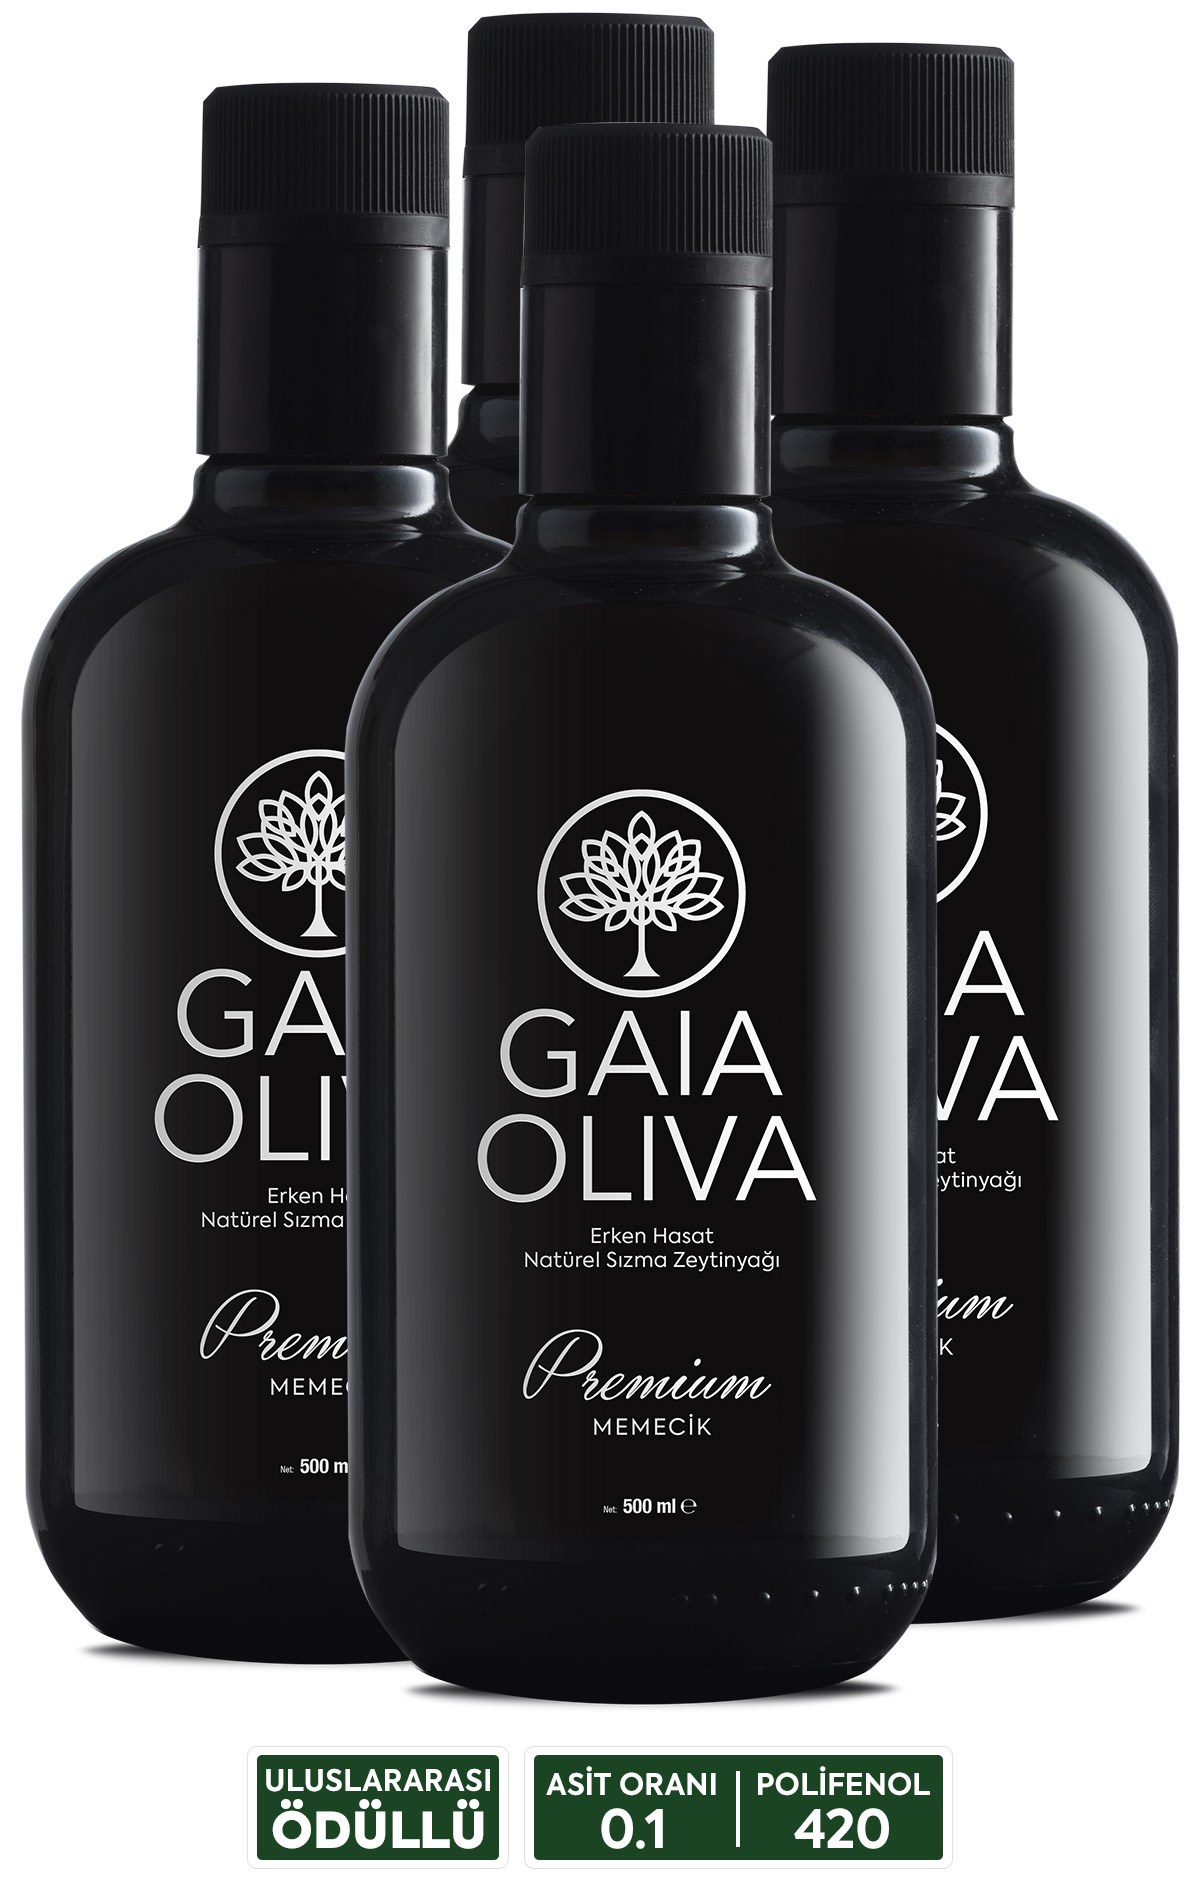 Premium Memecik 500 ml Katkısız Erken Hasat Natürel Sızma Zeytinyağı (Yeni  Hasat) | Gaia Oliva